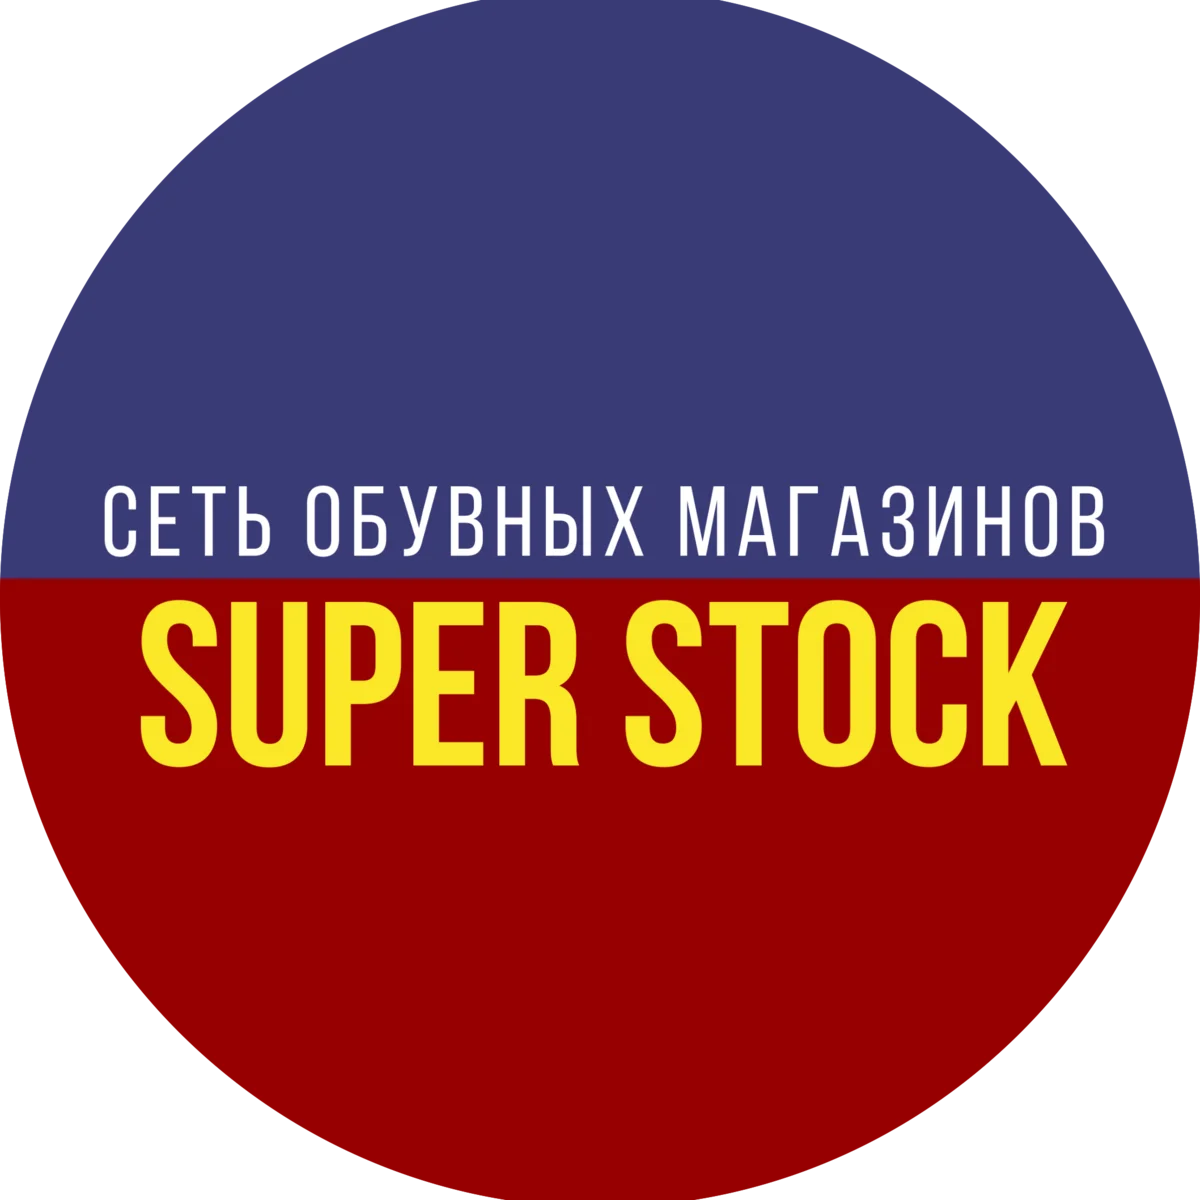 SuperStock